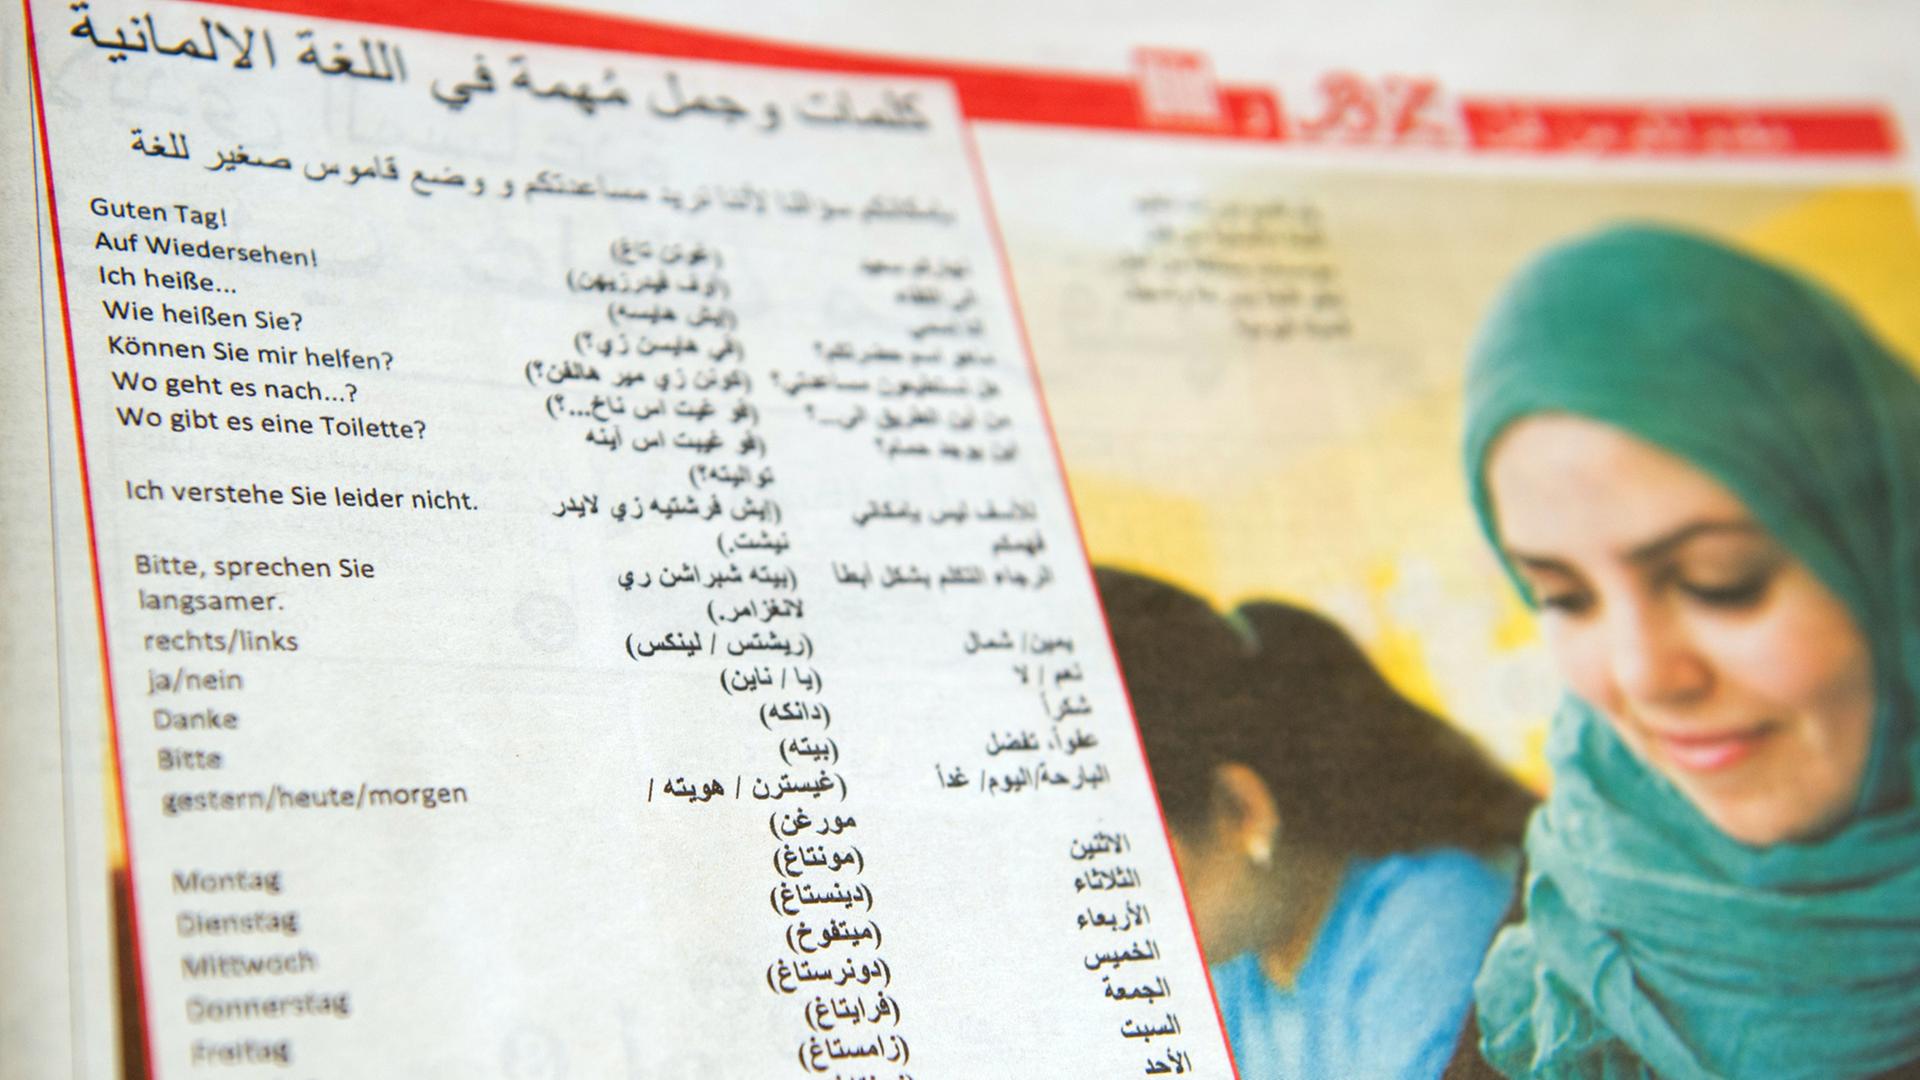 Die in Berlin erschienene Zeitungsbeilage in Arabisch aus der "BZ" und der "Bild"-Zeitung: Auf mehreren Seiten gab es in dieser Informationen zu Anlaufstellen für eine erste Orientierung für Neuankömmlinge aus dem arabischen Raum.